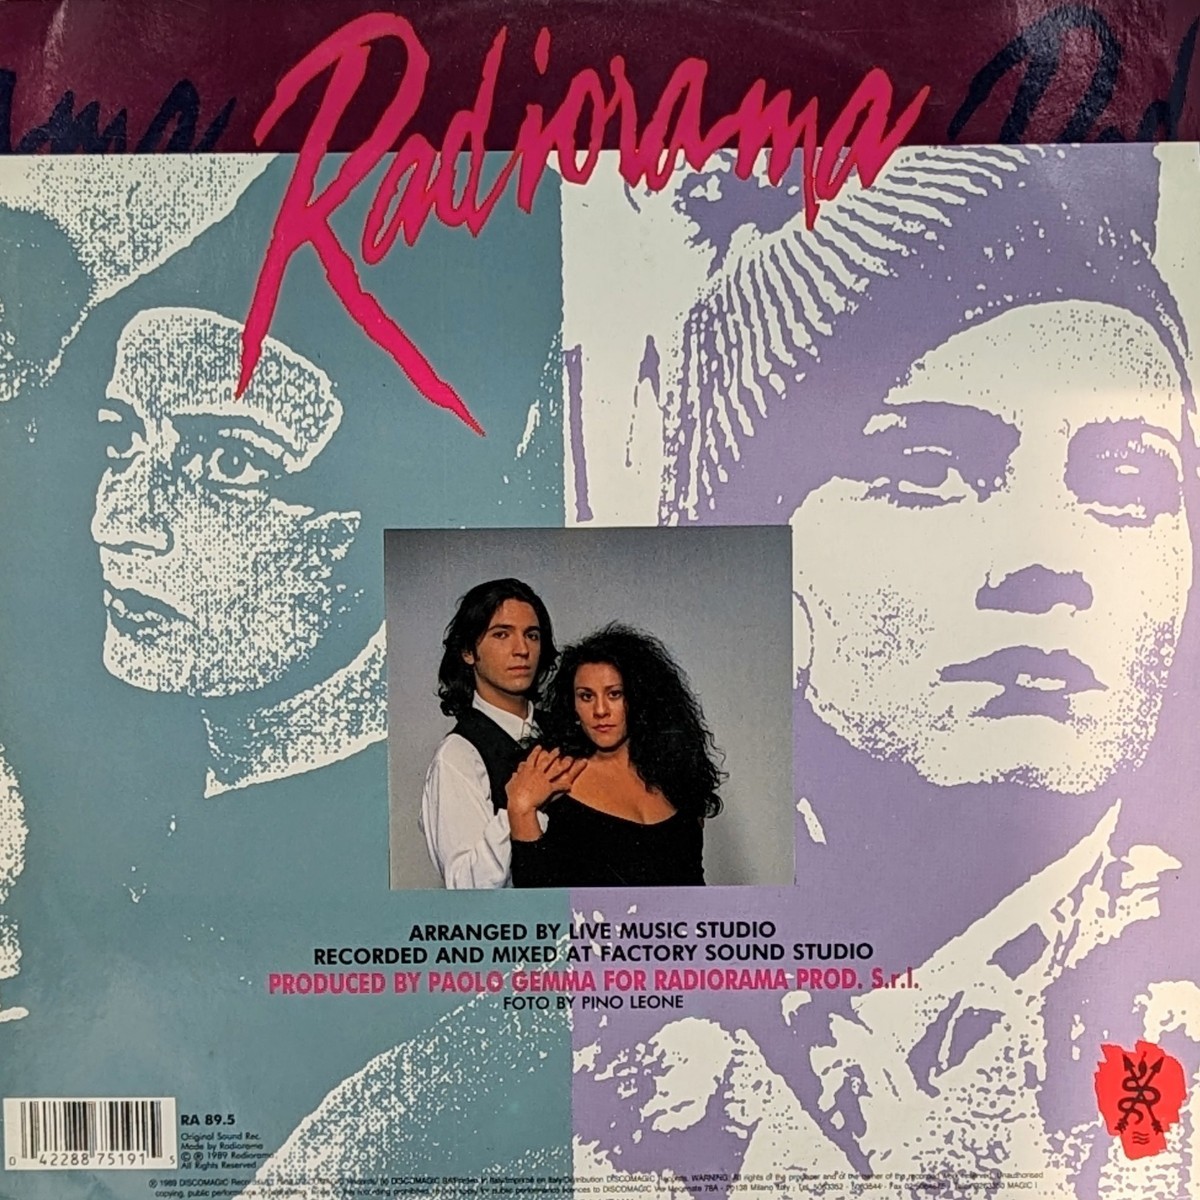 12~ запись Radiorama Baciami (Kiss Me)1989 Италия запись 